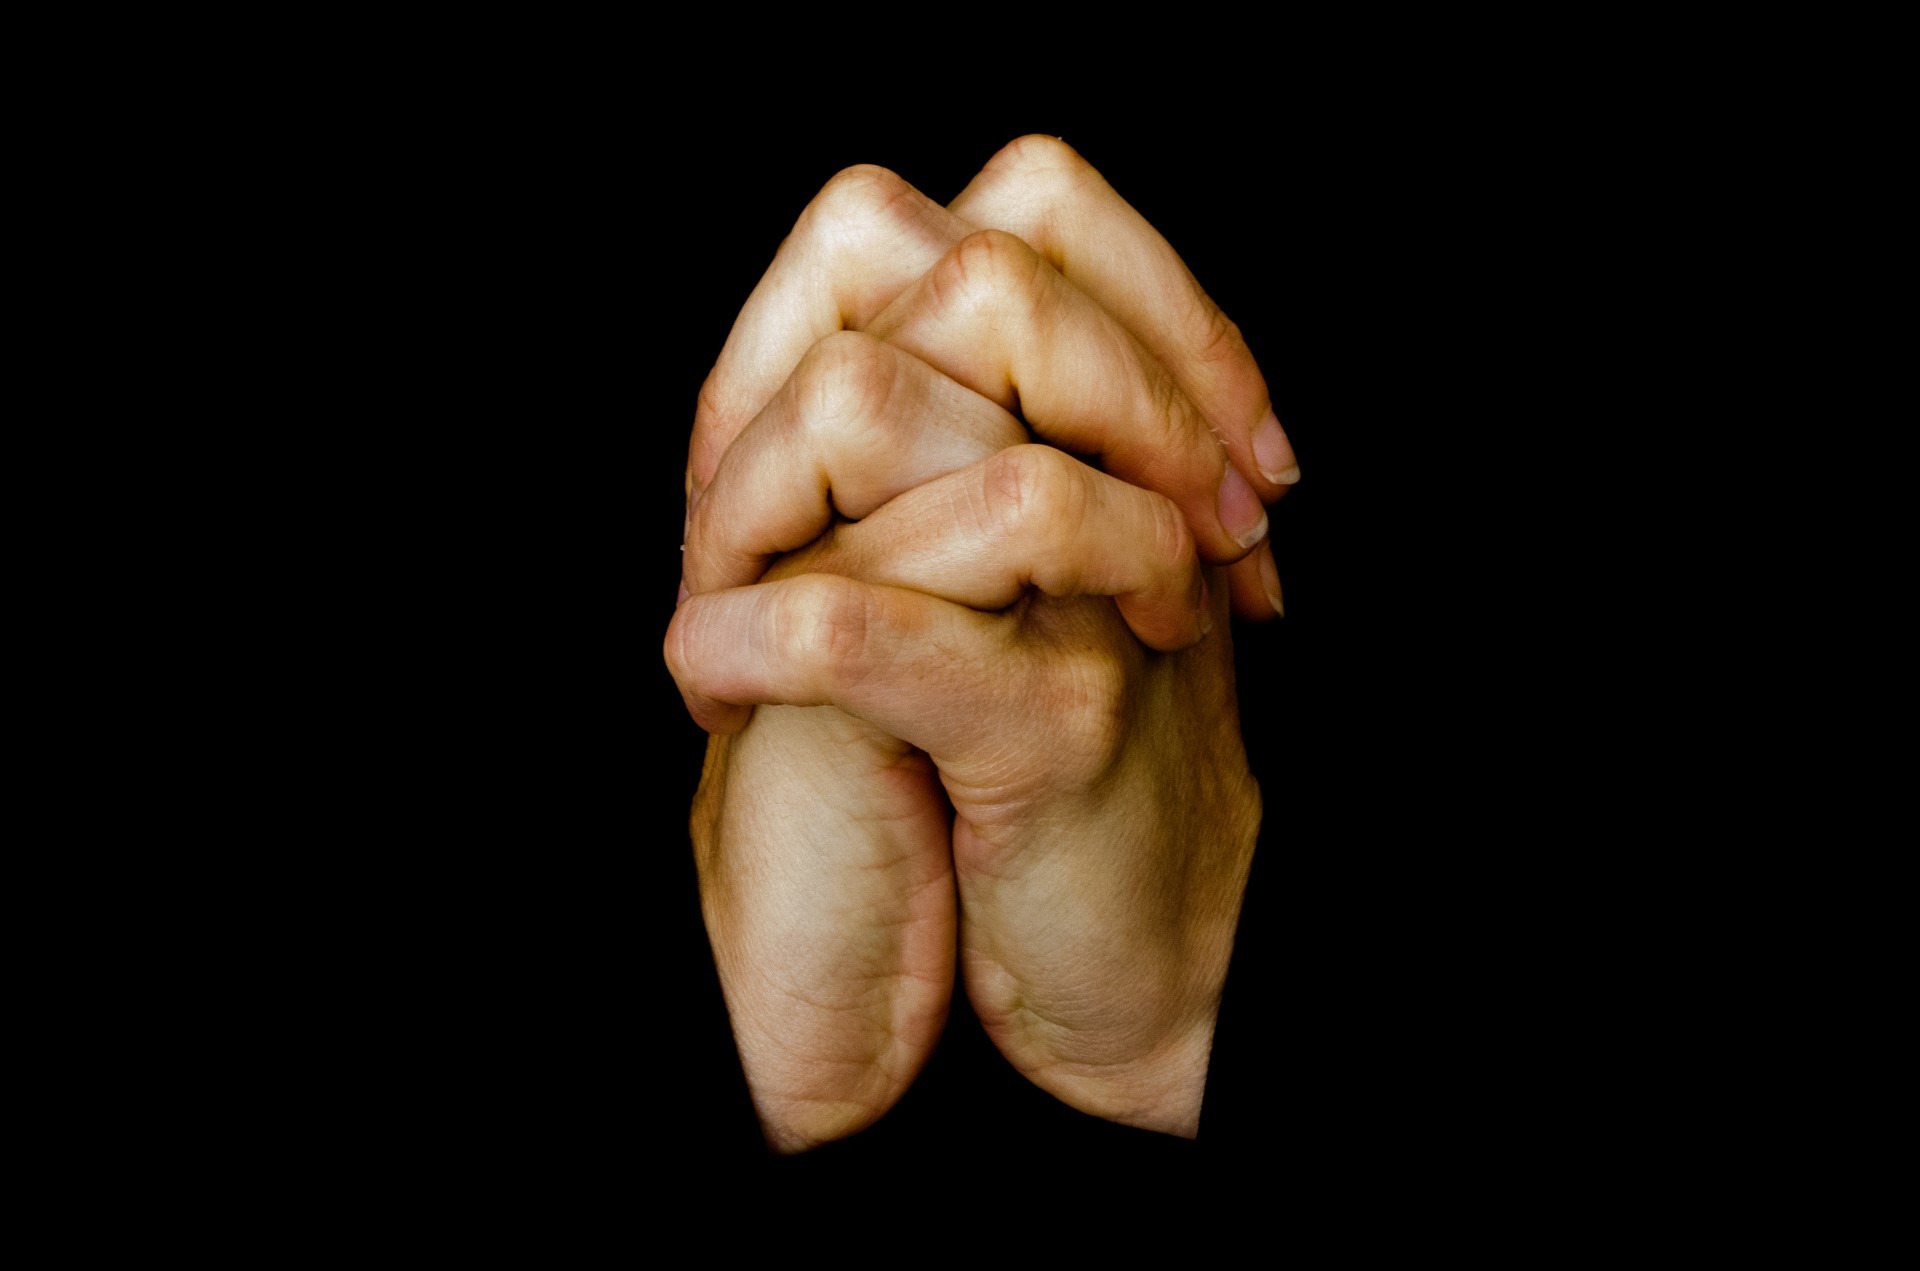 praying hands wallpaper,hand,finger,gesture,organ,human